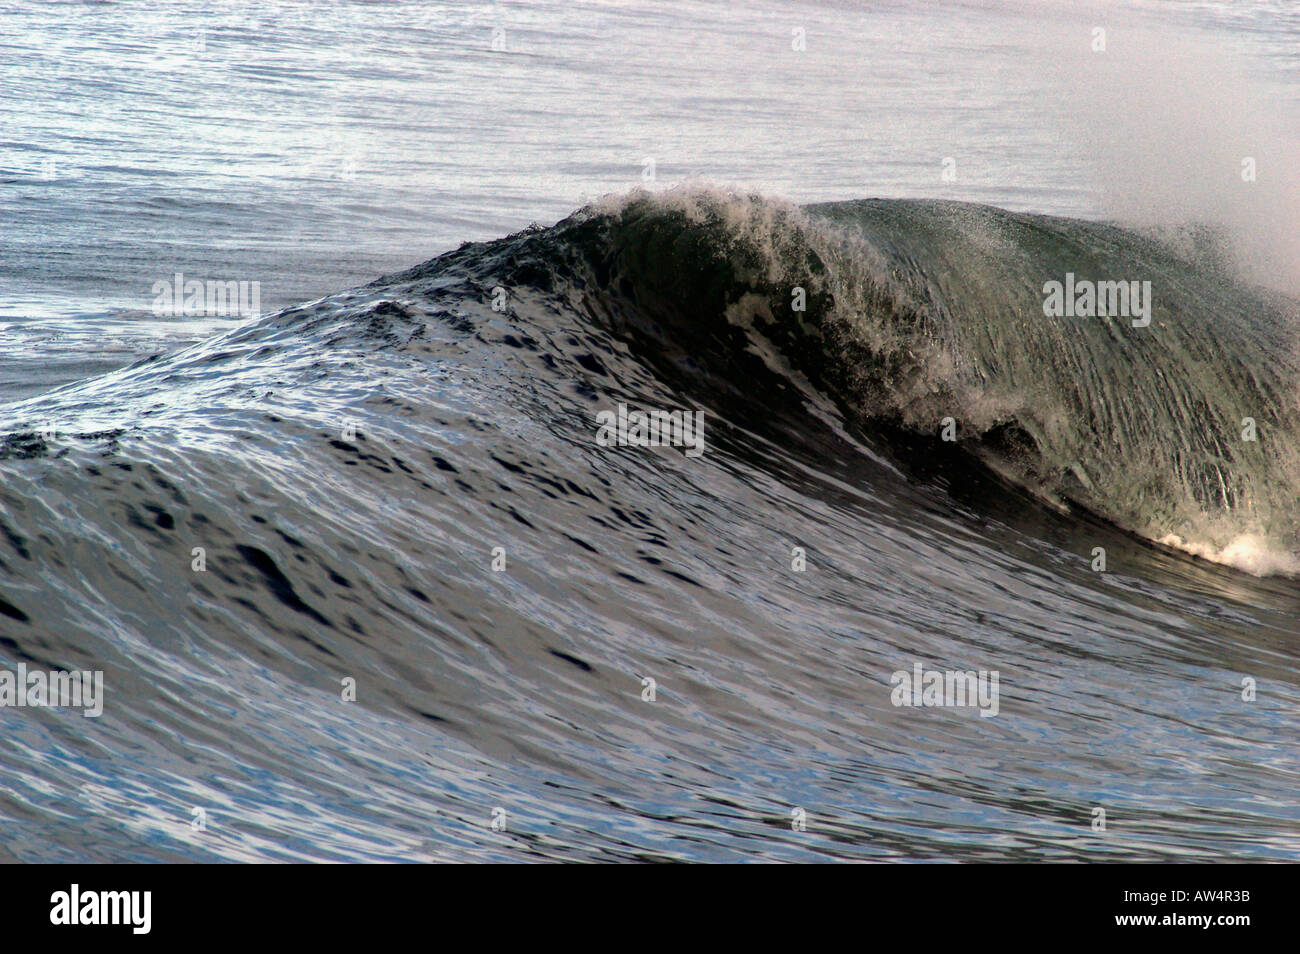 breaking ocean wave Stock Photo